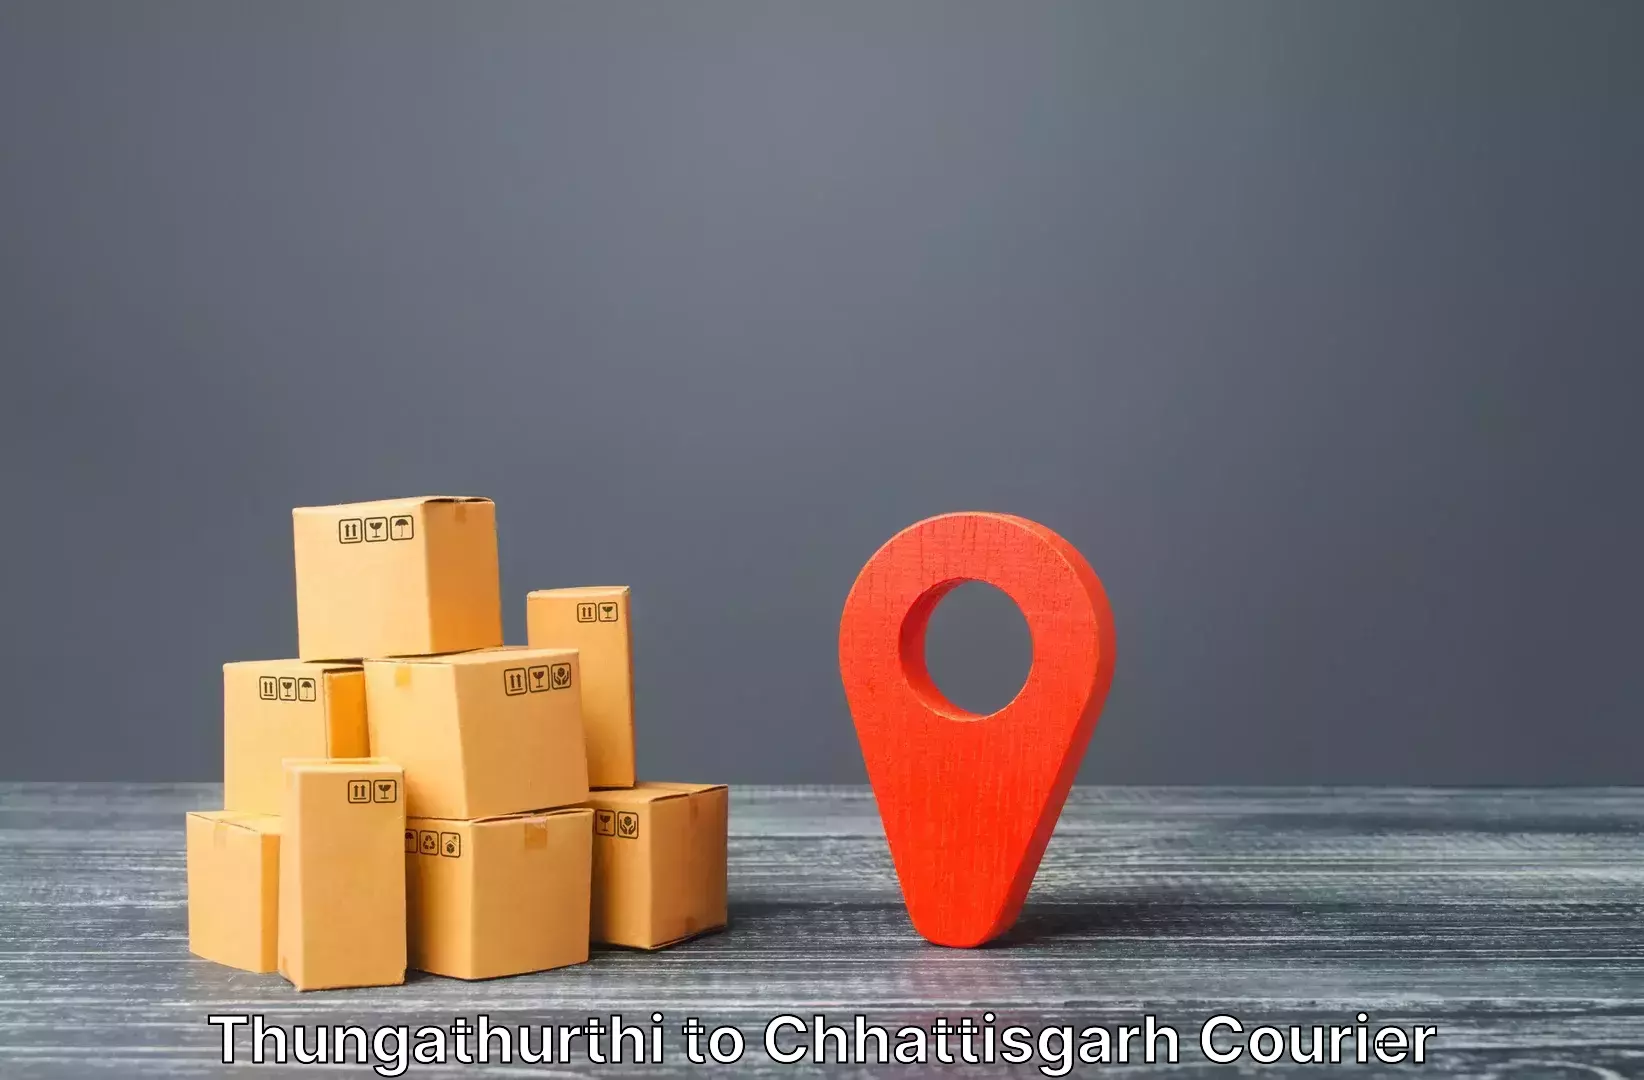 Online luggage shipping in Thungathurthi to Mahasamund